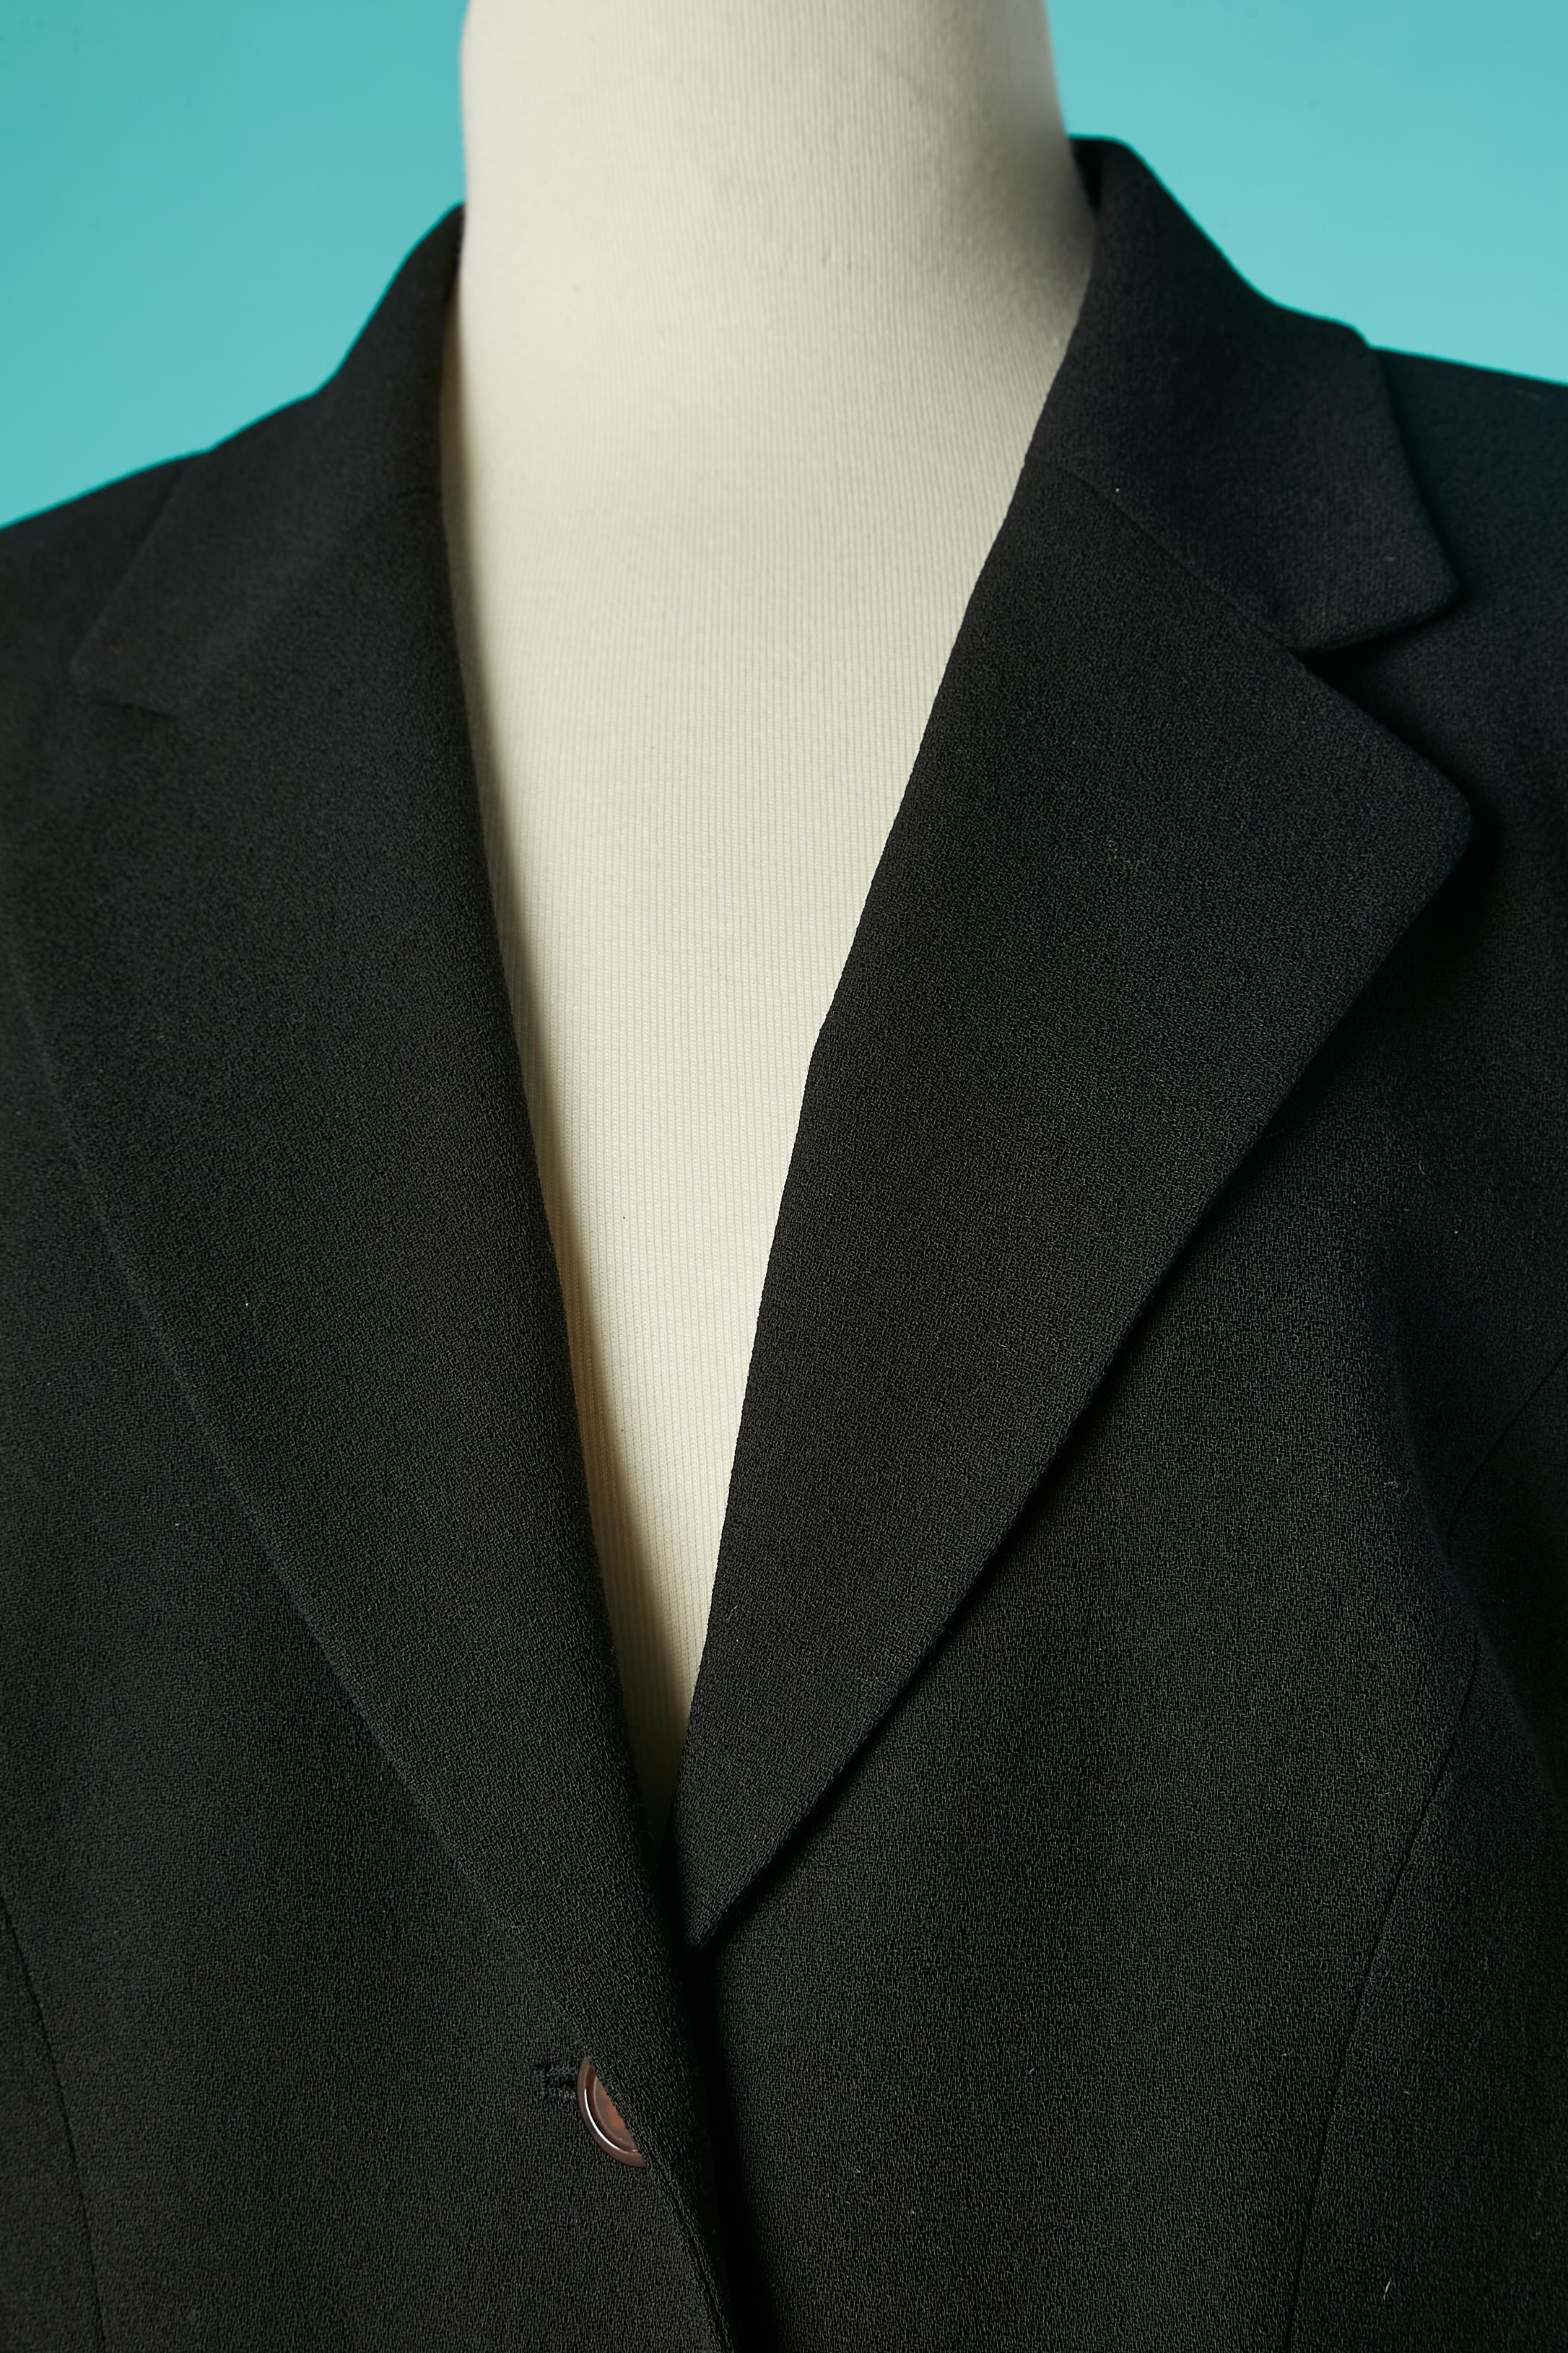 Einreihige Jacke aus schwarzem Crêpe mit einer Vollstickerei  Ärmel. Die Stickerei wird mit Perlen, Pailletten, Chiffon und Faden ausgeführt. Tasche auf beiden Seiten. 
Keine Stoff-Tag-Zusammensetzung, aber das Futter ist wahrscheinlich Viskose.